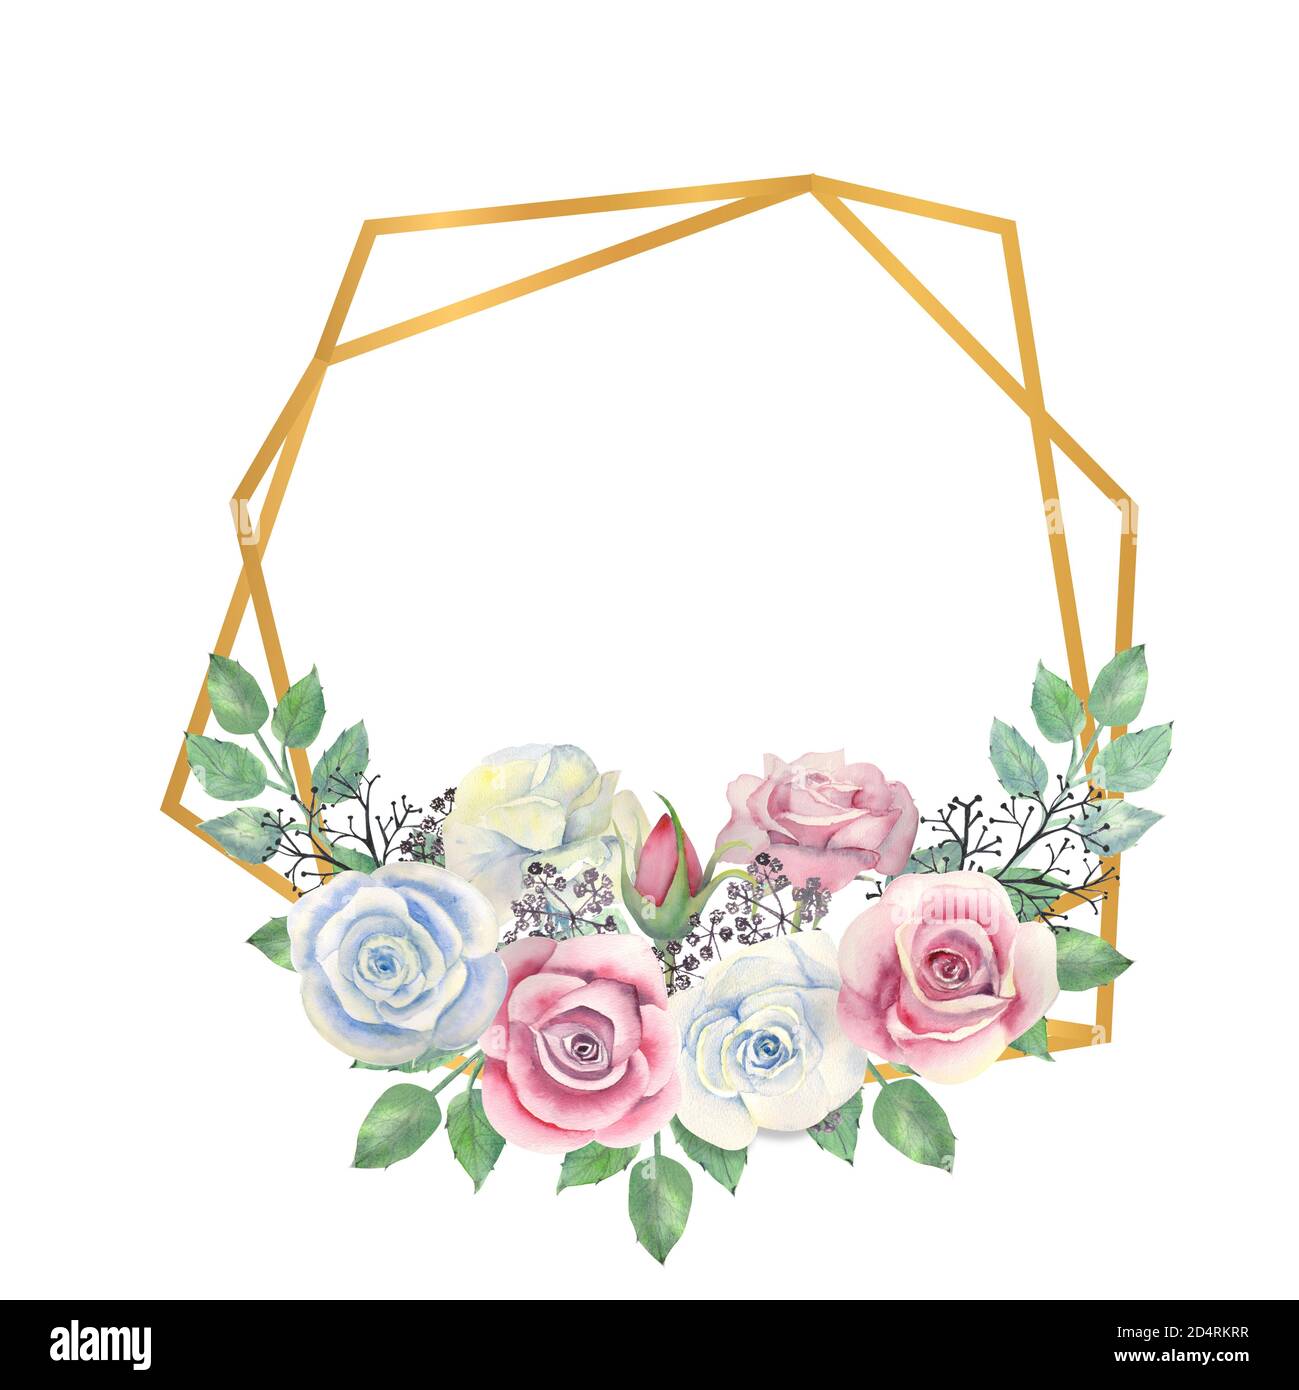 Fiori di rose blu e rosa, foglie verdi, bacche in una cornice poligonale d'oro. Illustrazione acquerello Foto Stock